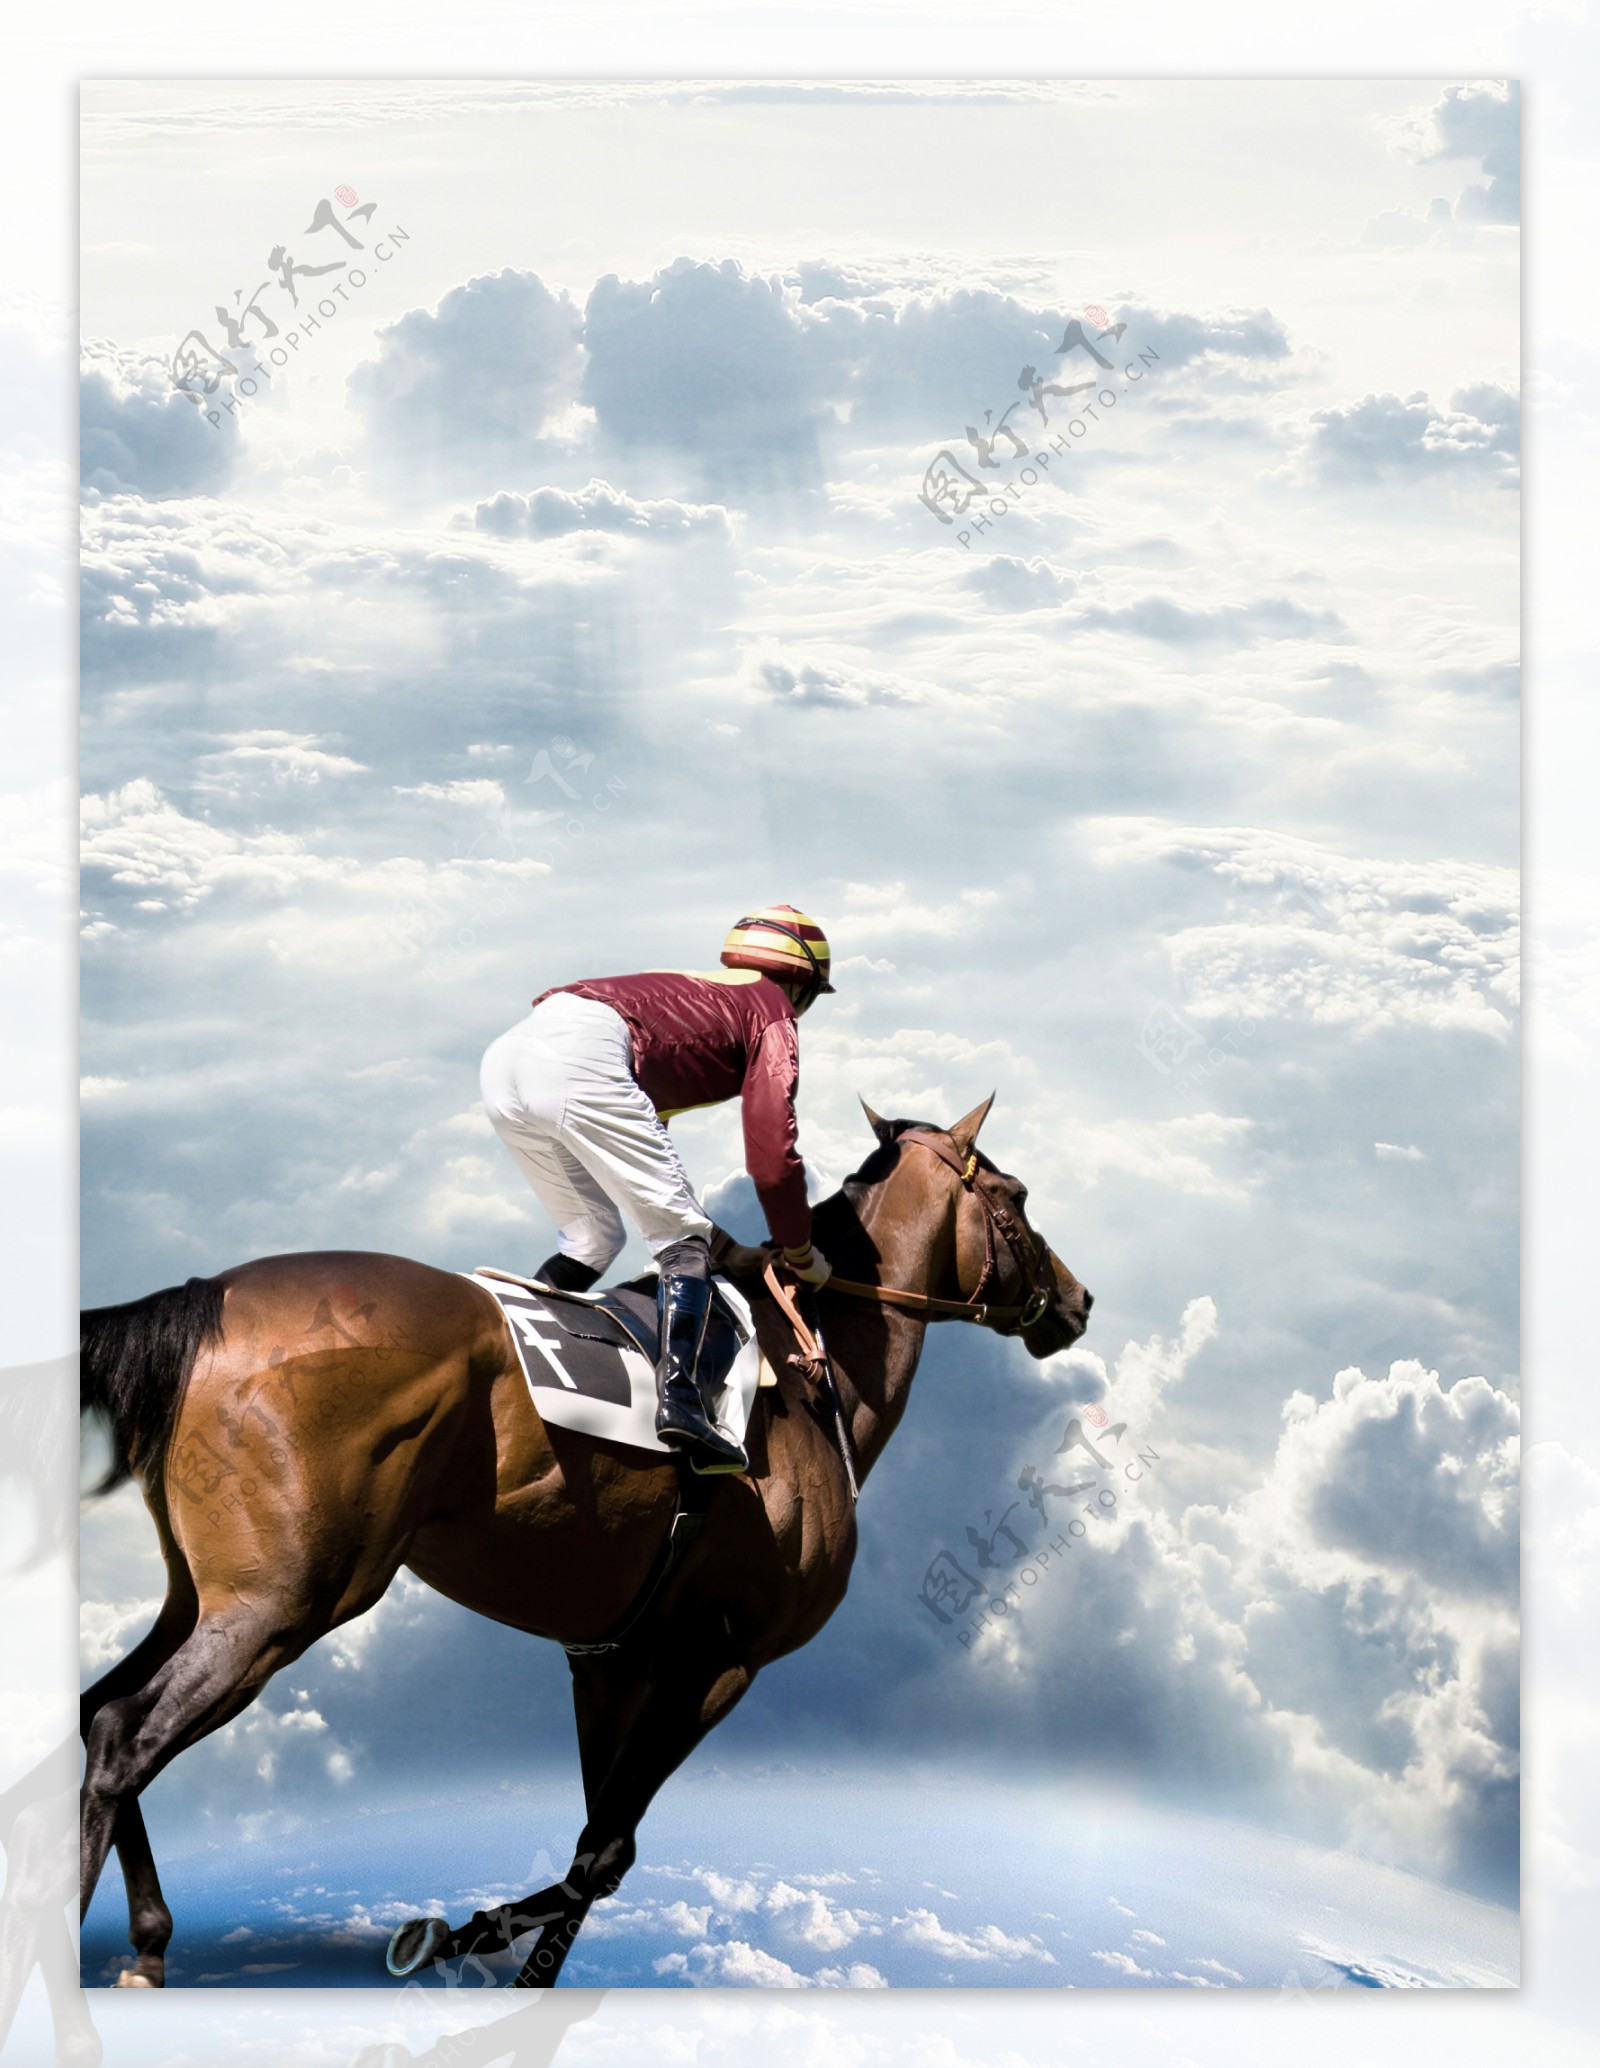 典雅的骑马人骑乘马 库存照片. 图片 包括有 夏天, 春天, 车手, 盔甲, 男人, 驯马, 乘驾, 字段 - 64187182